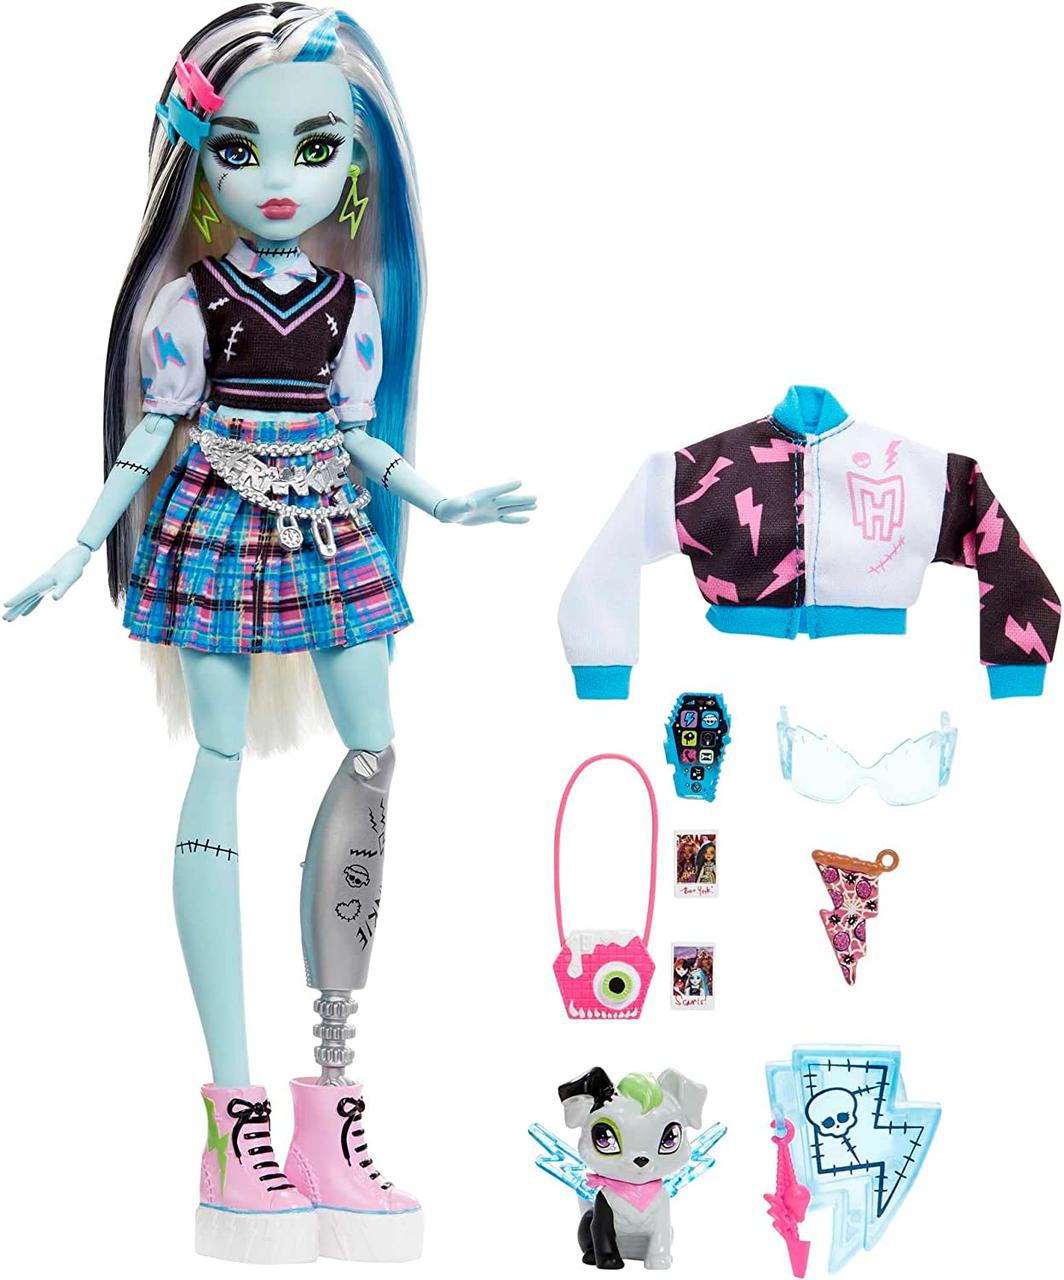 Лялька Mattel Монстер Хай Френки Штейн 2022 Monster High Frankie Stein (HHK53)